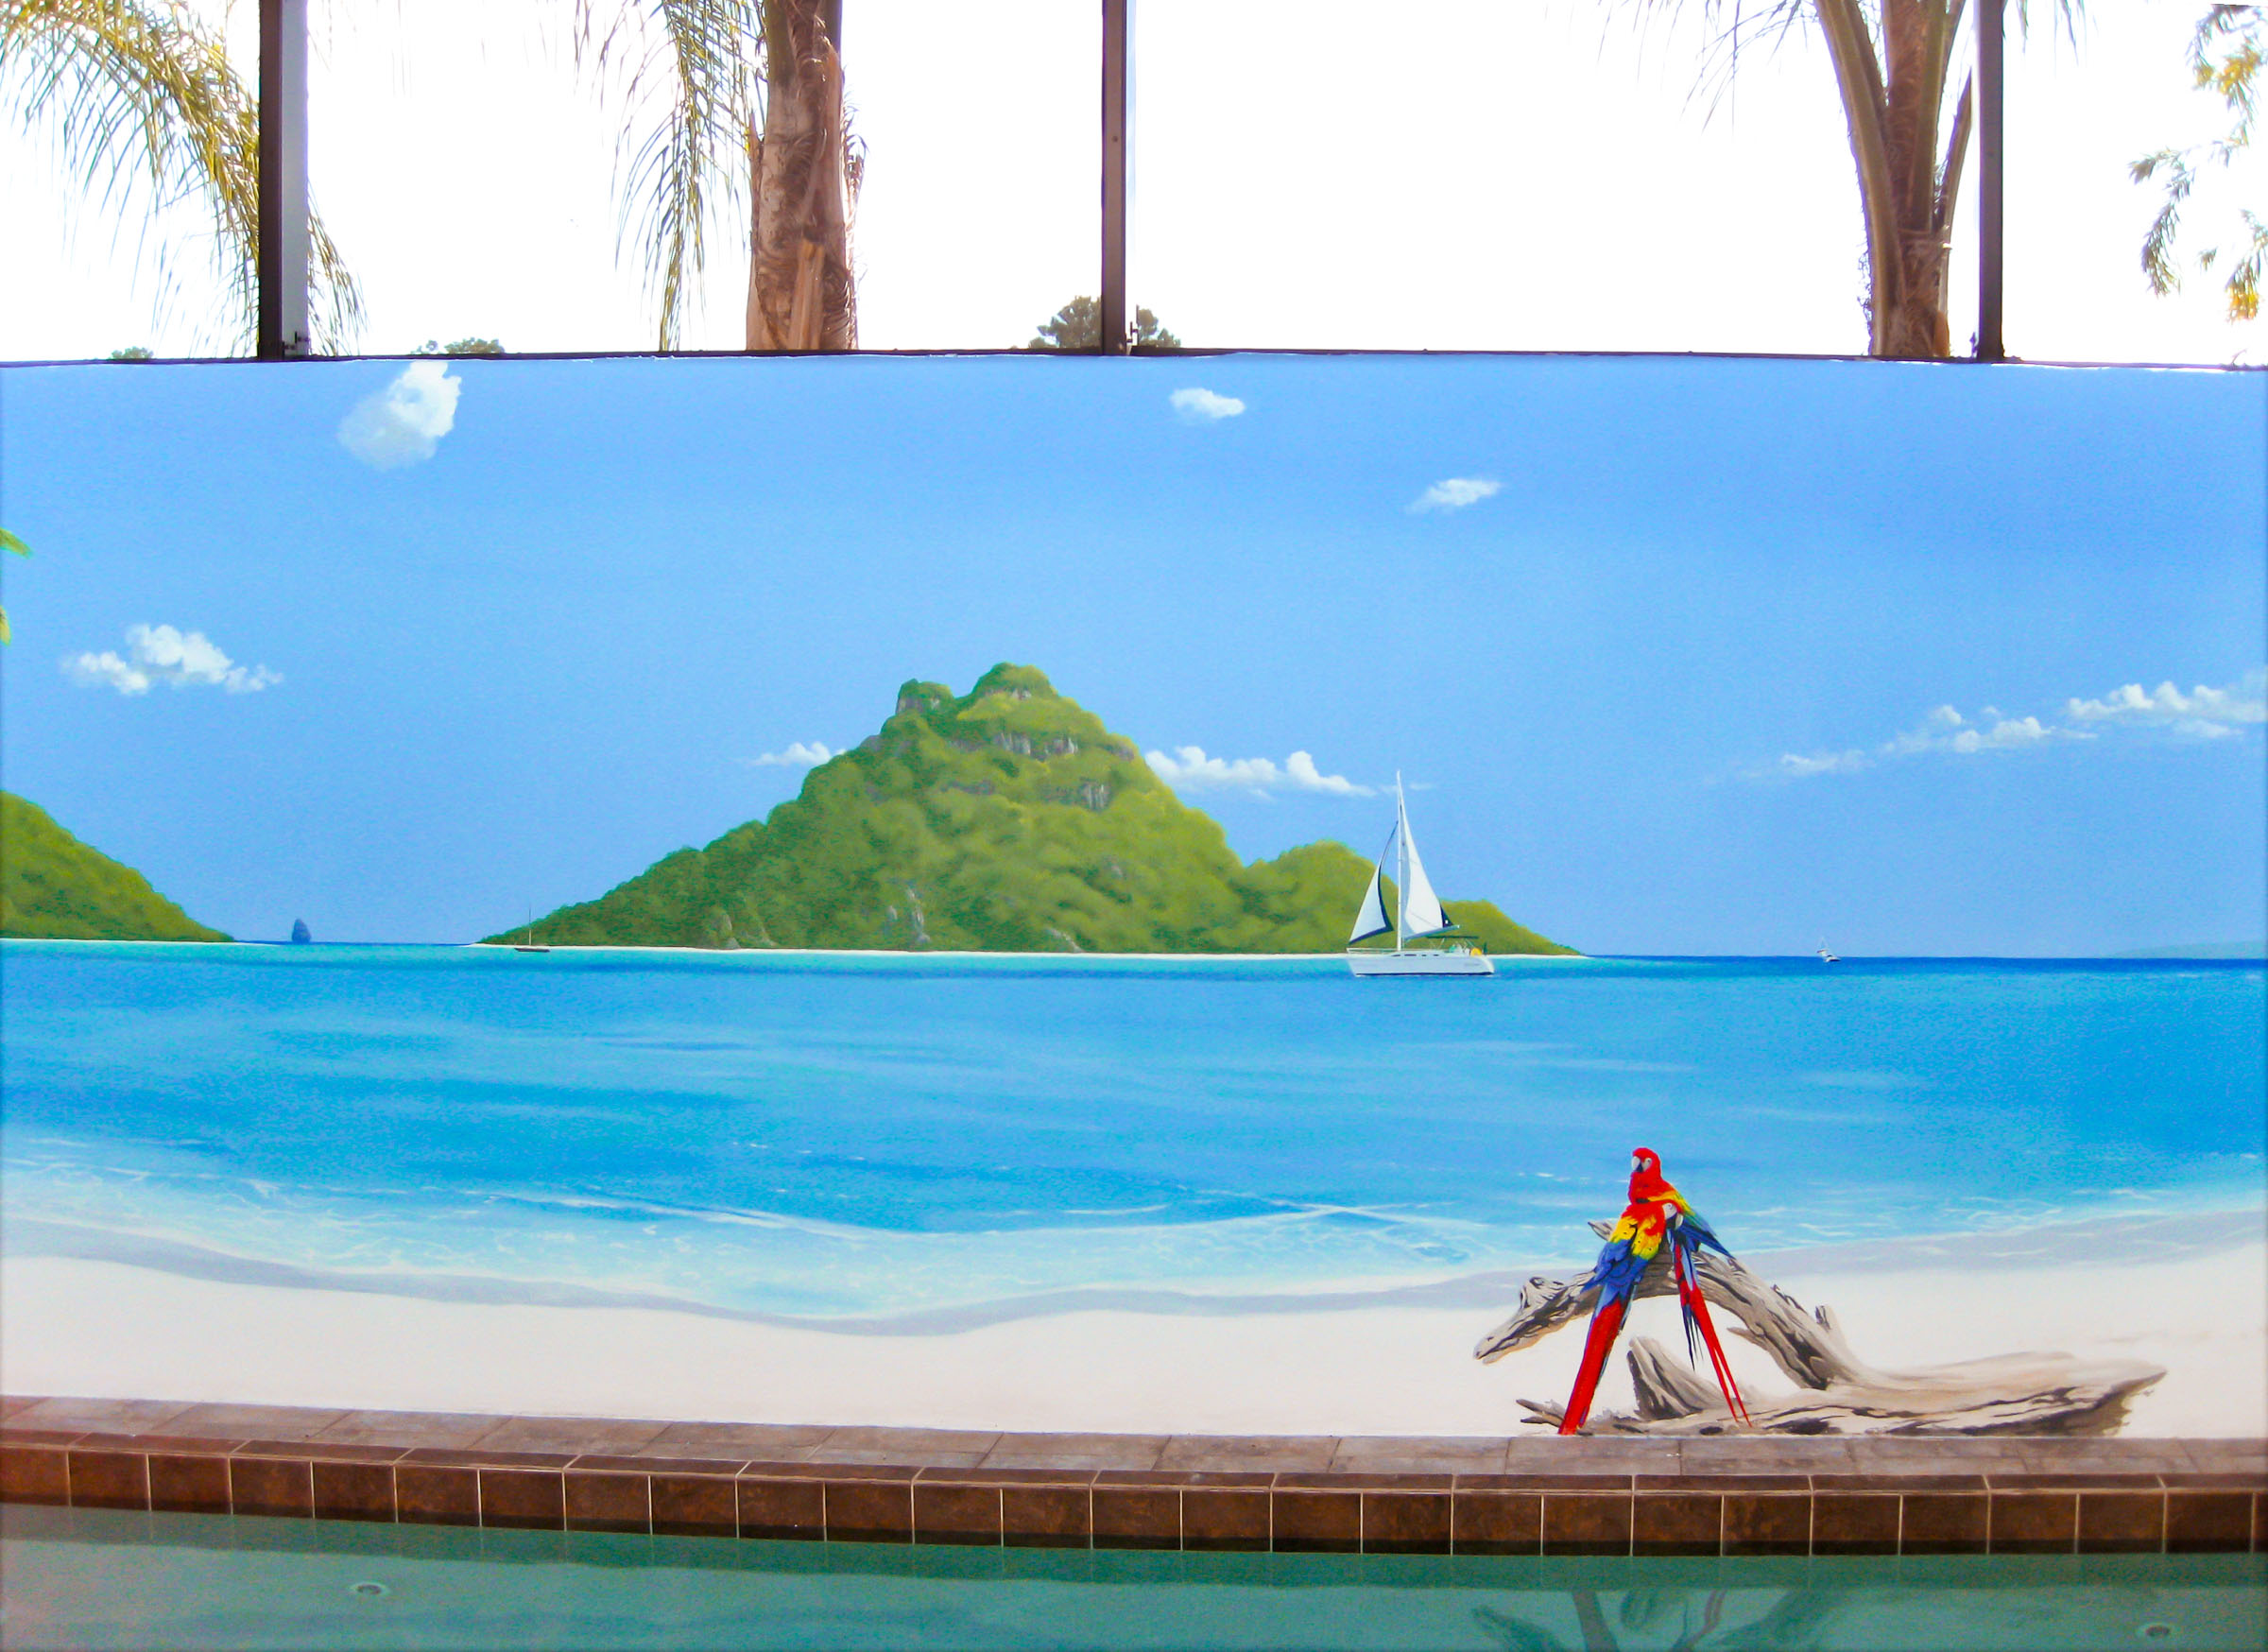 florida-pool-mural-paradise